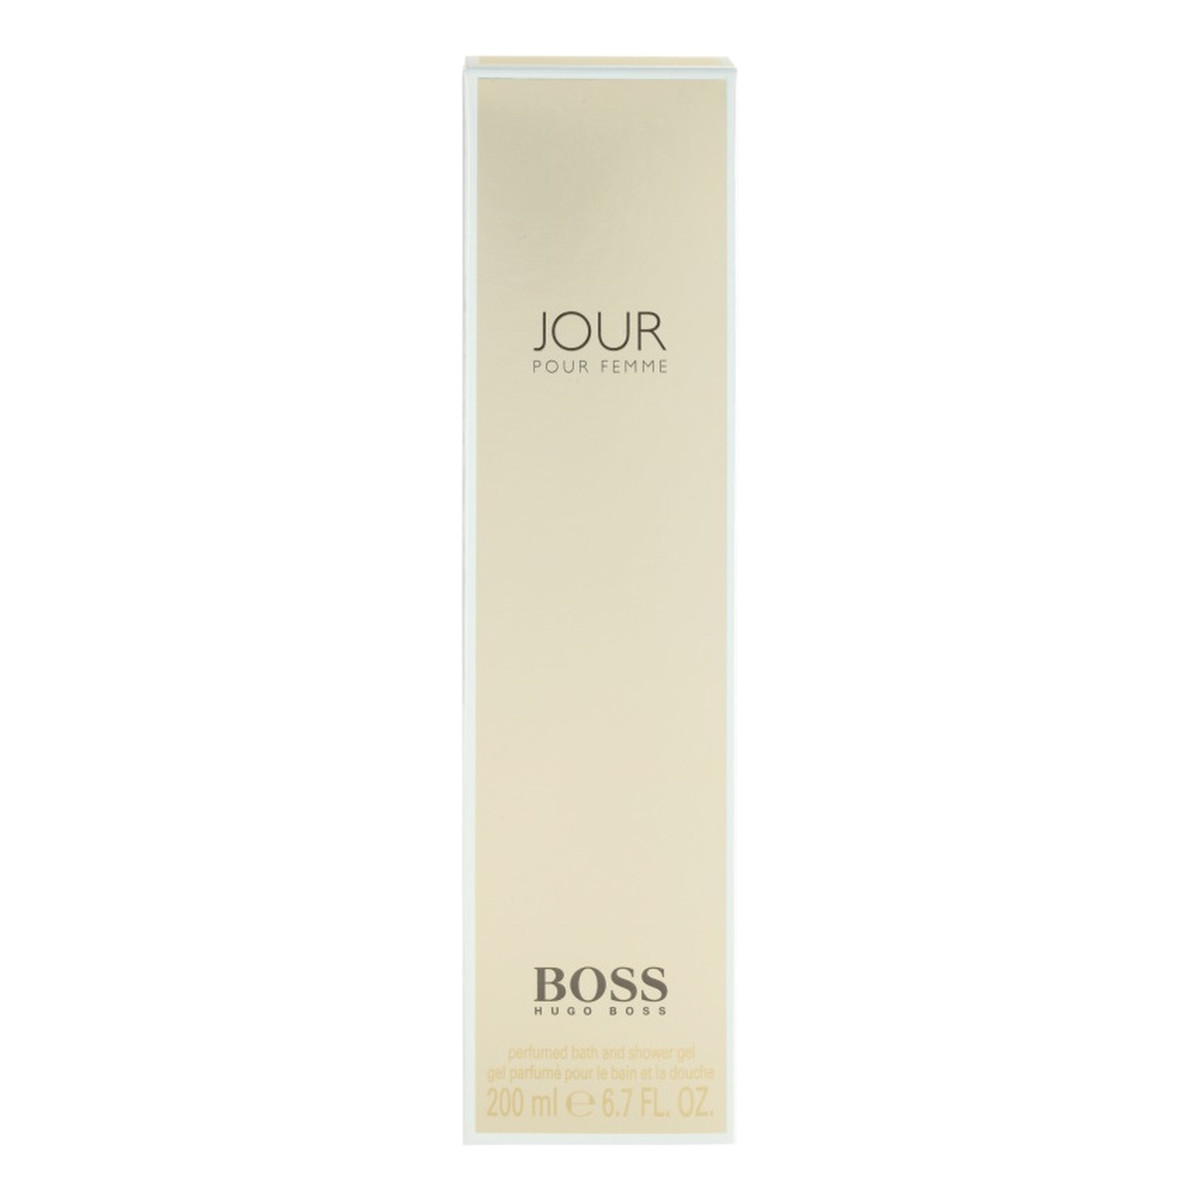 Hugo Boss Jour Pour Femme Żel pod prysznic 200ml